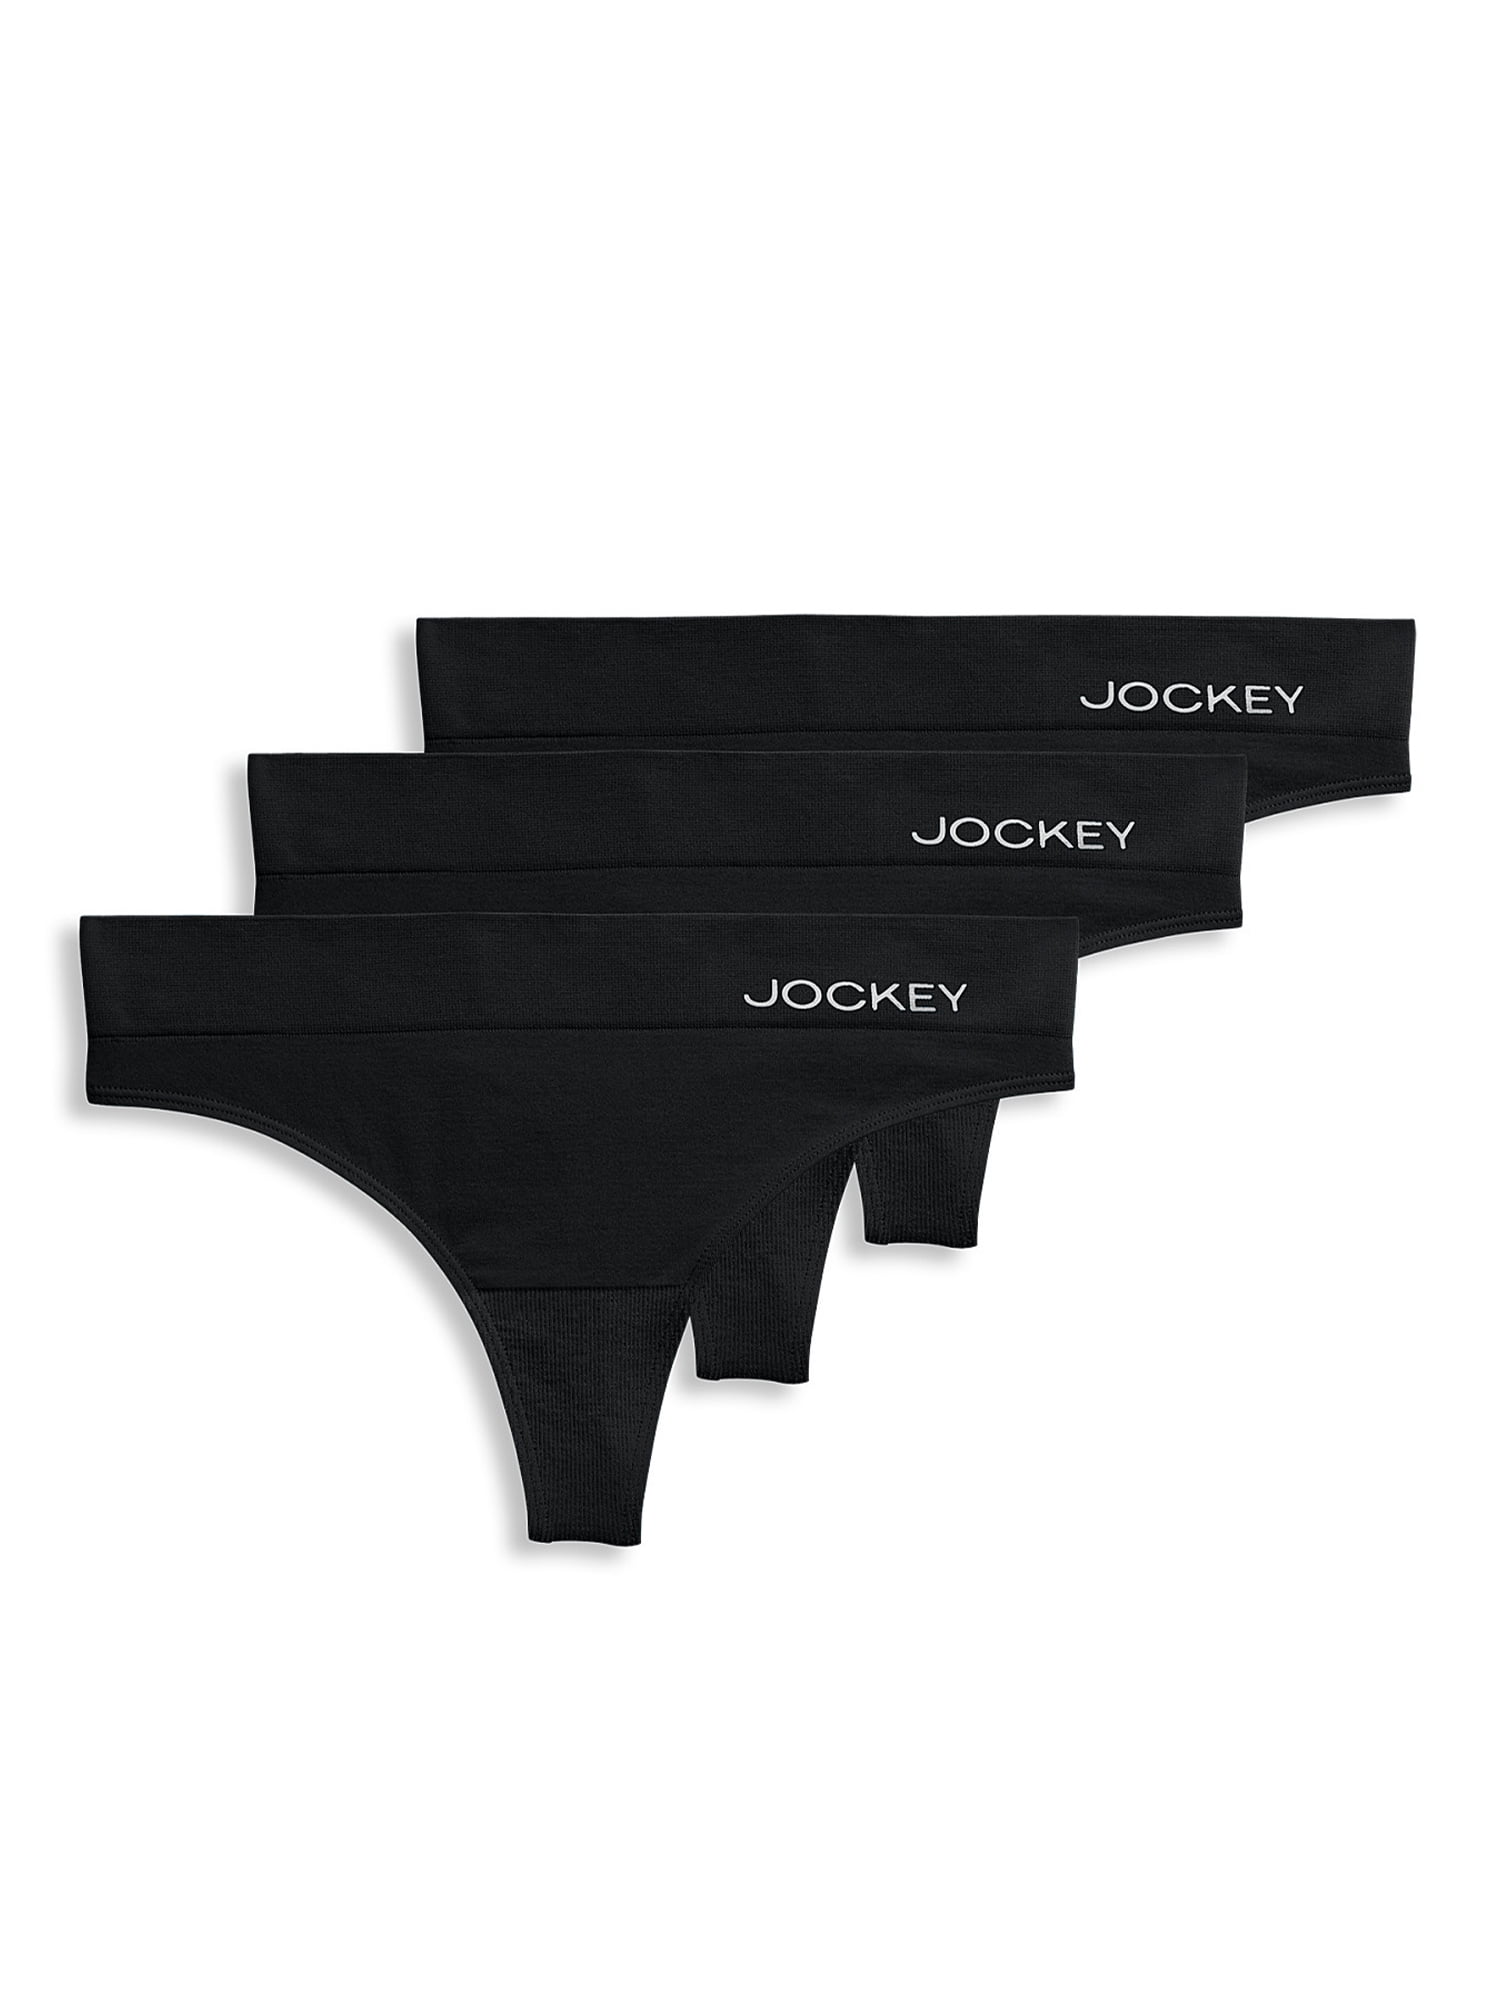 Jockey® Essentials Girls' Cotton Stretch Brief - 3 pack, Sizes S